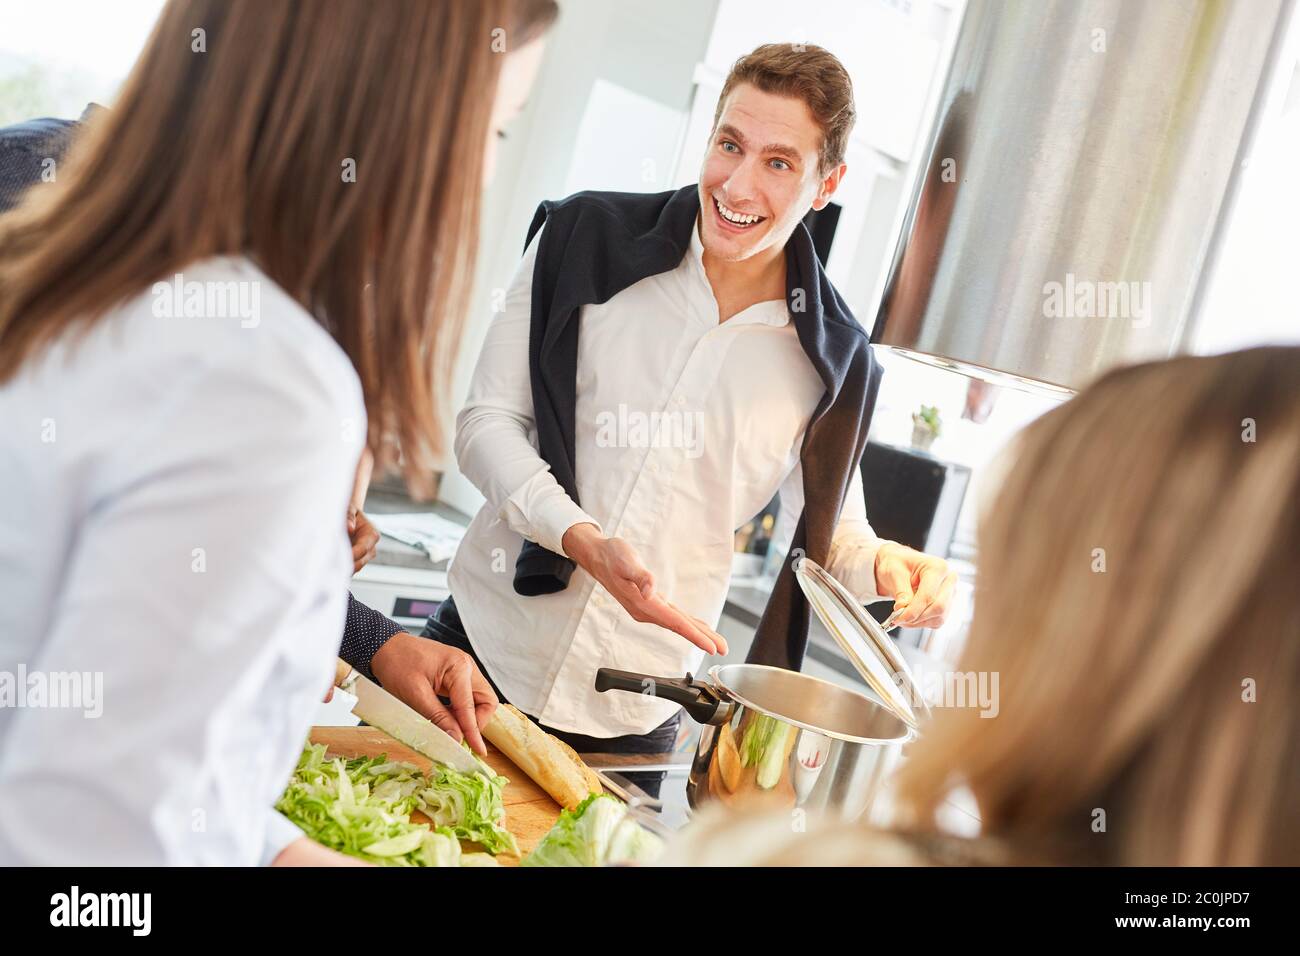 Lachende Studenten bereiten gemeinsam Mahlzeiten in einer Gemeinschaftsküche zu Stockfoto